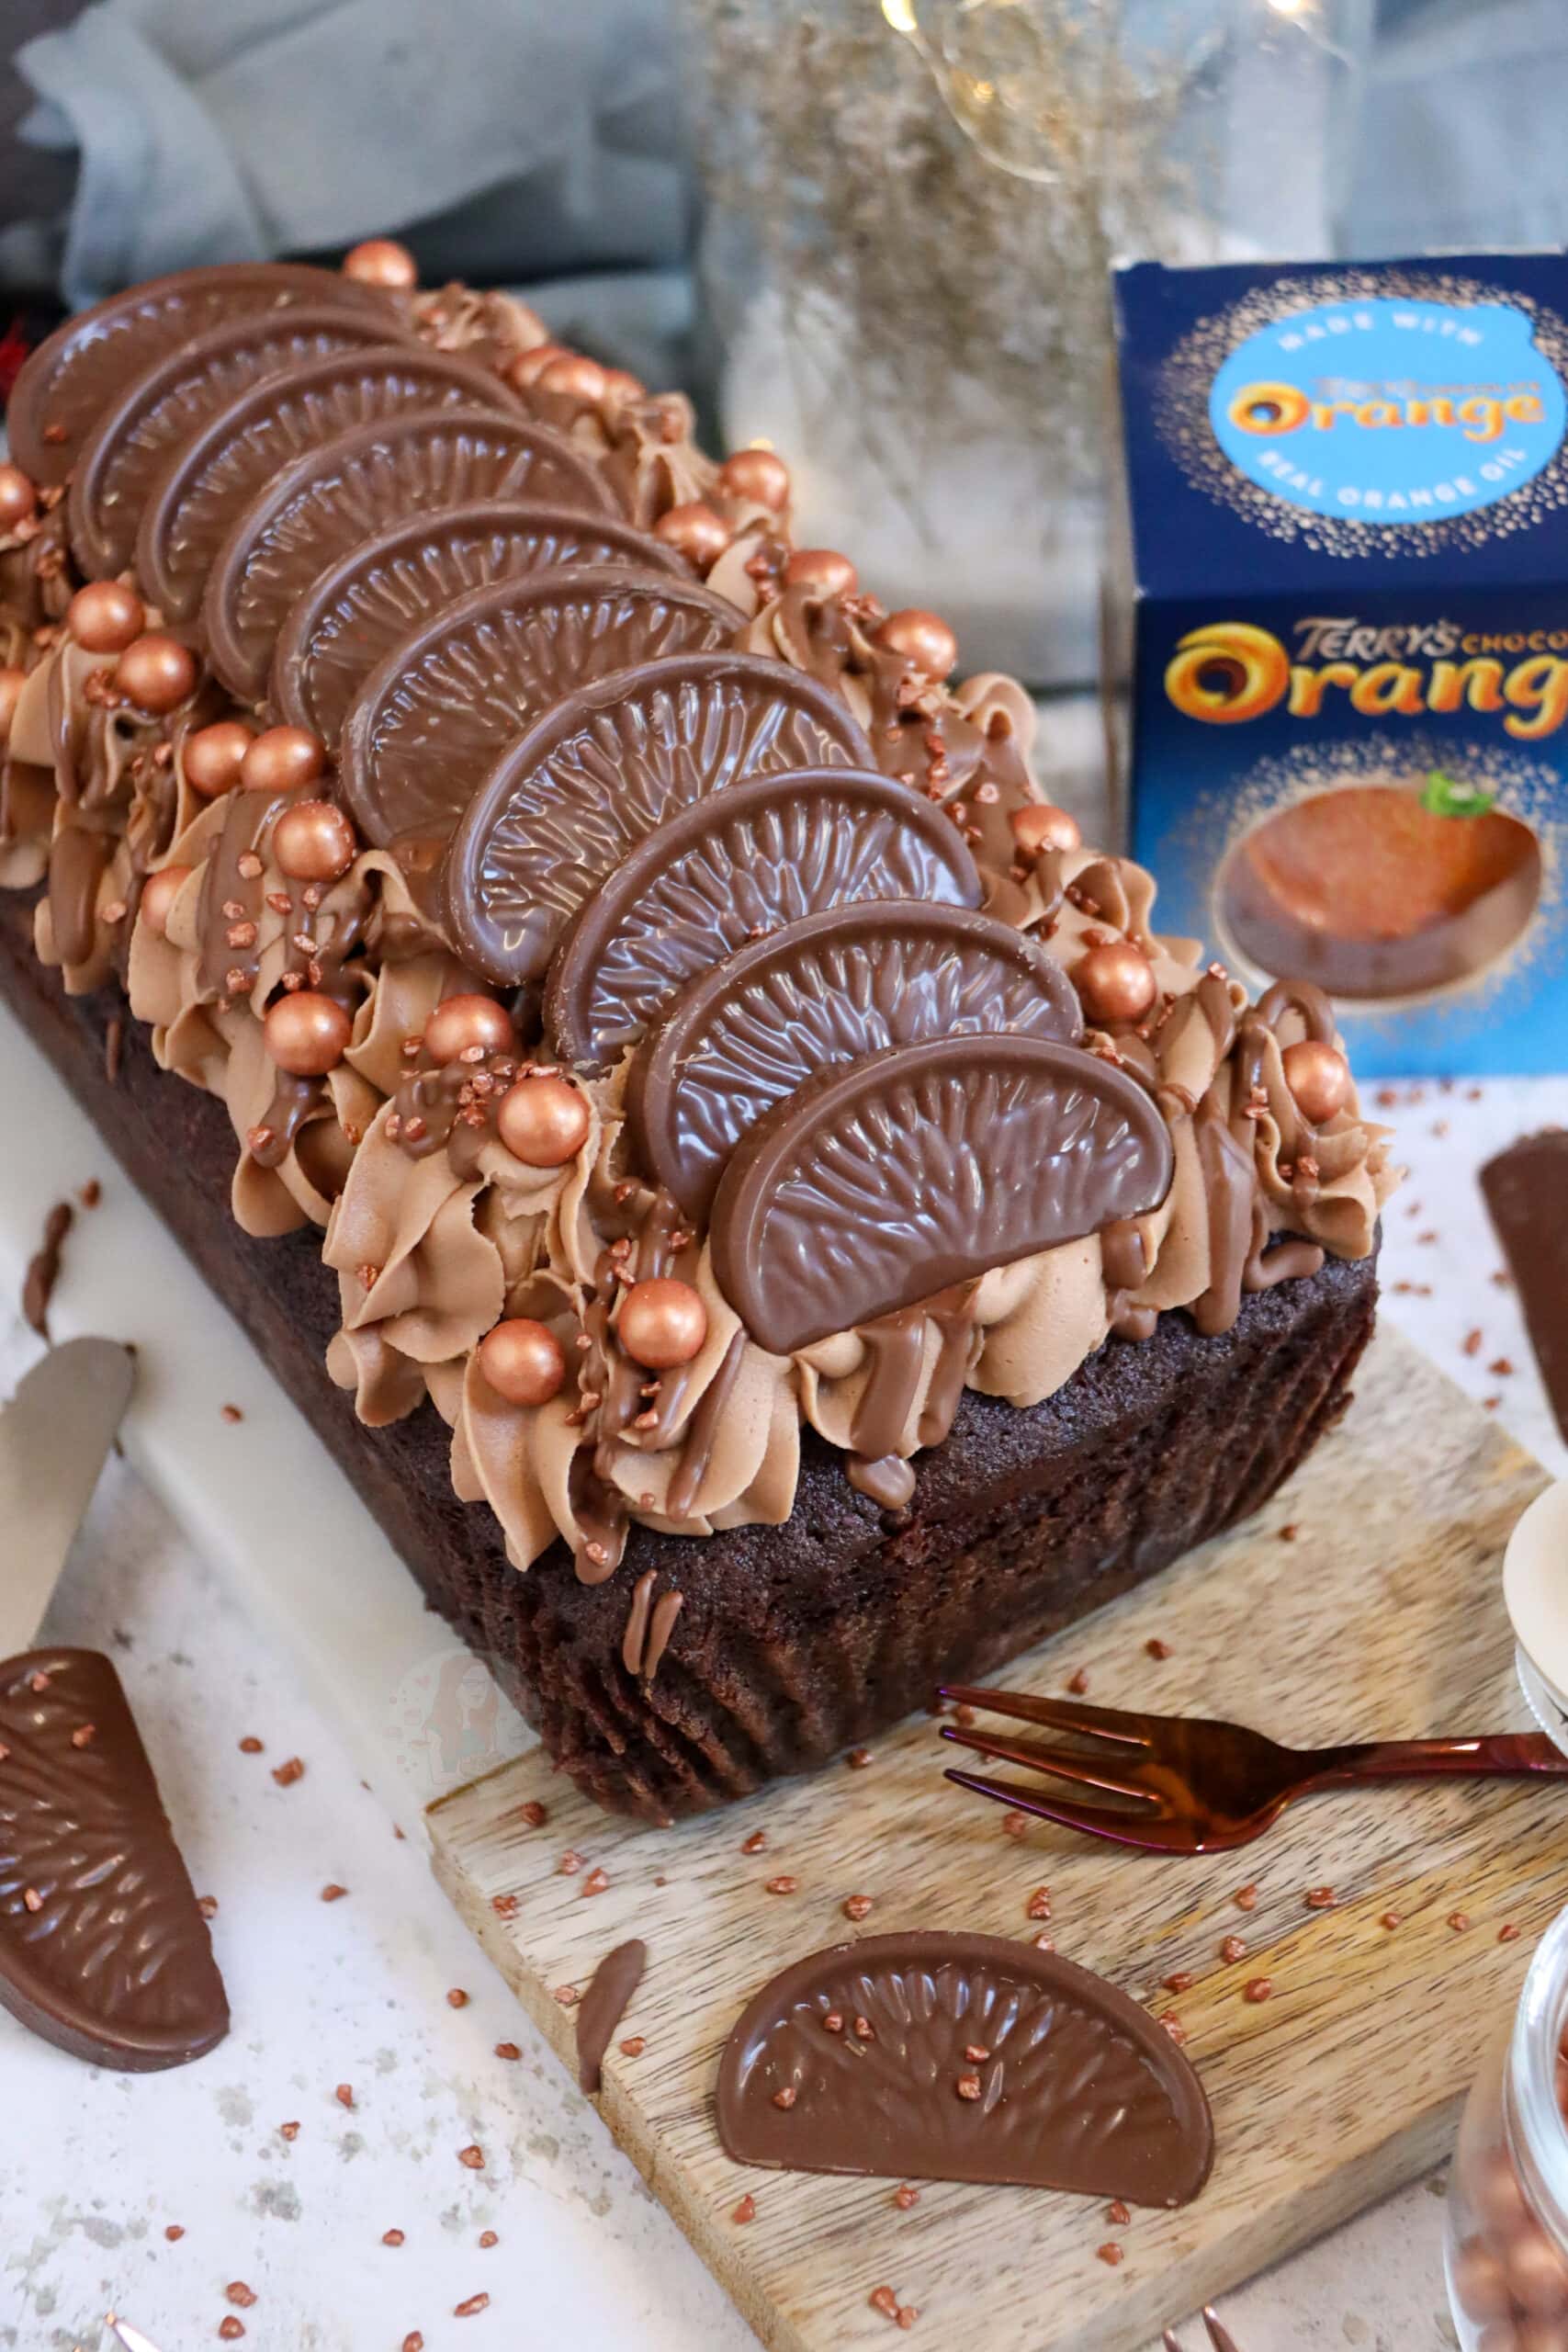 Chocolate Orange Celebration Cake – Gluten Free (with Orange Macaron)